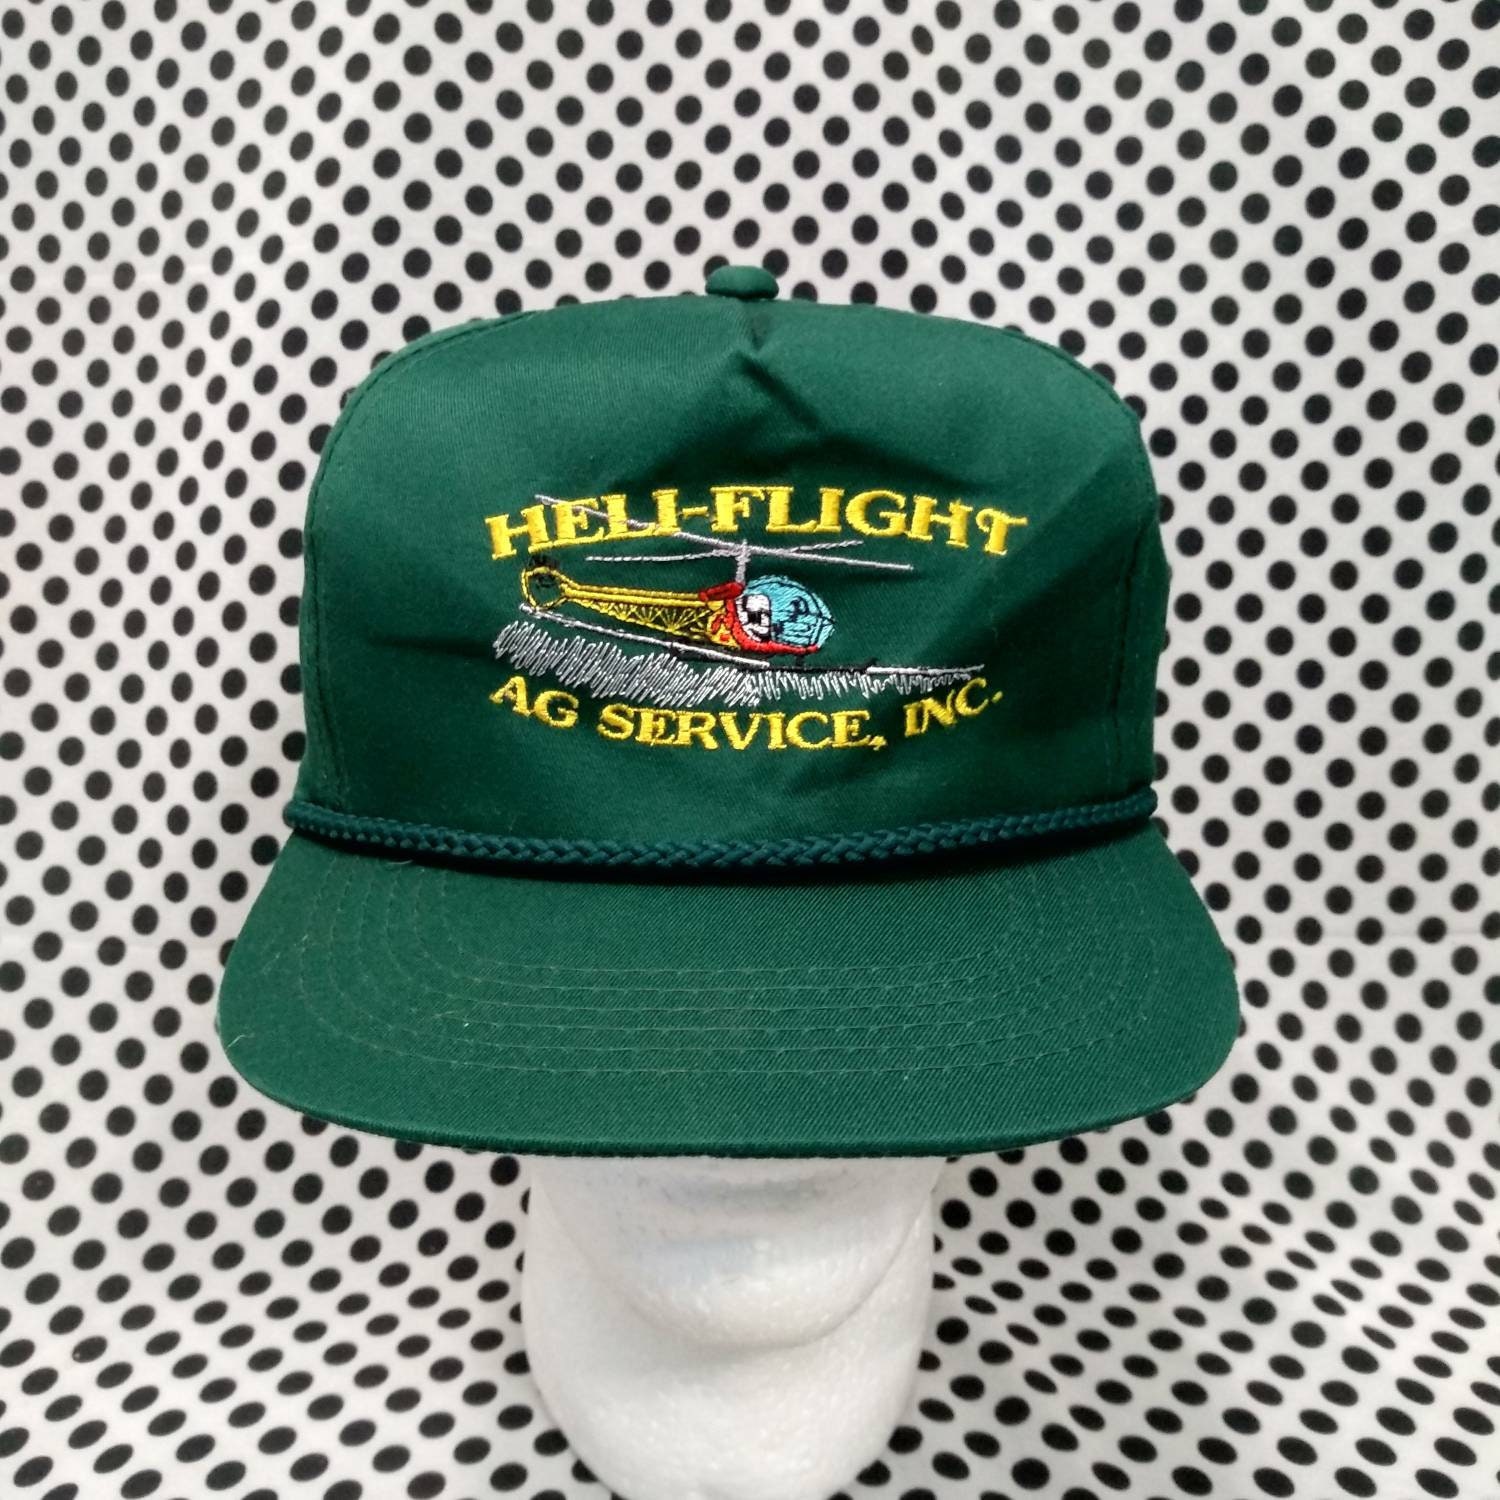 Flight Caps & Service Caps